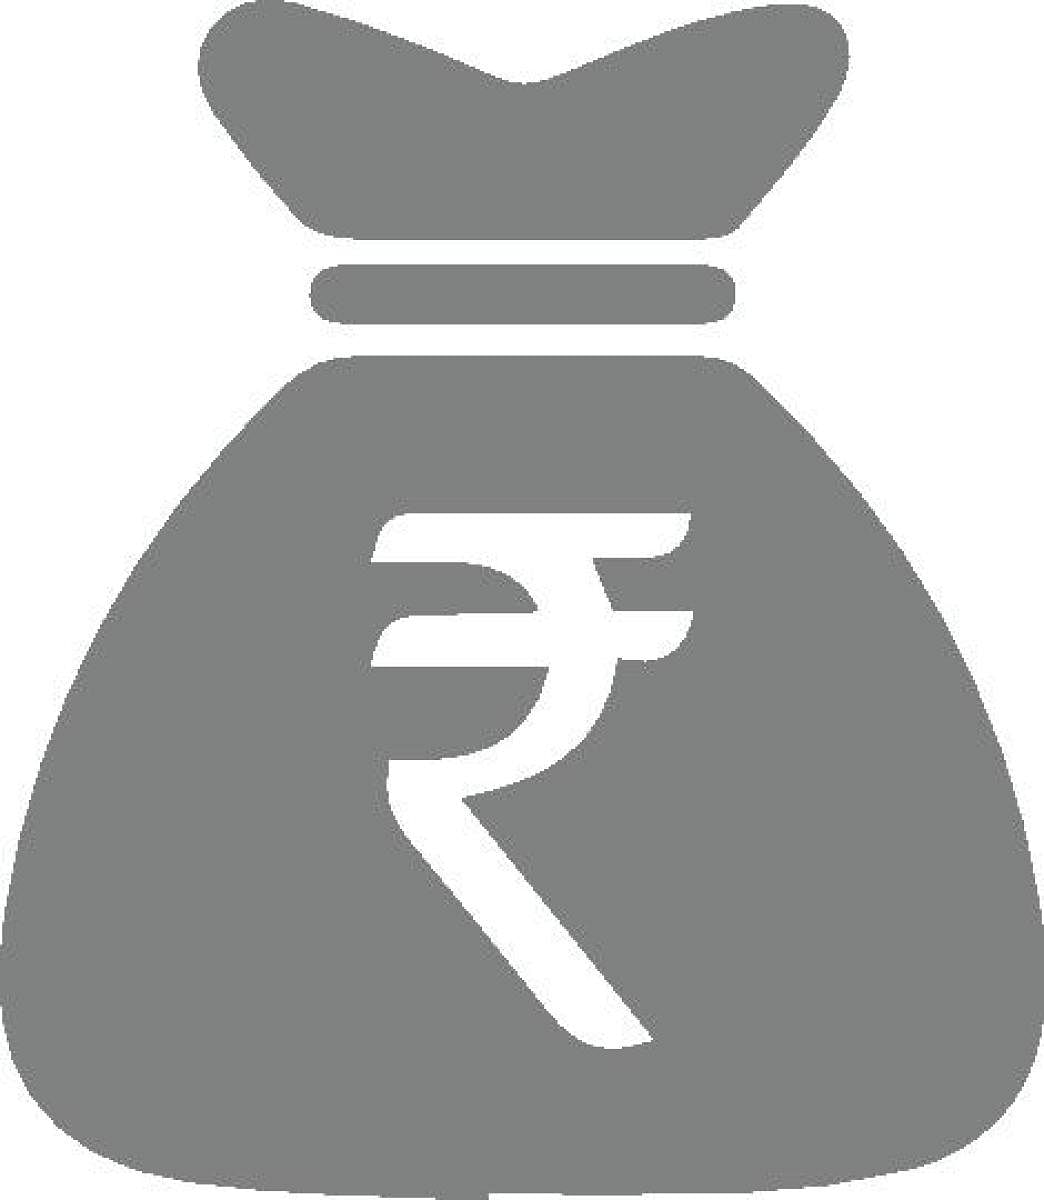 ₹ 852 ಕೋಟಿ ದೇಣಿಗೆ ಸಂಗ್ರಹಿಸಿರುವ 10 ಪ್ರಾದೇಶಿಕ ಪಕ್ಷಗಳು: ವರದಿ